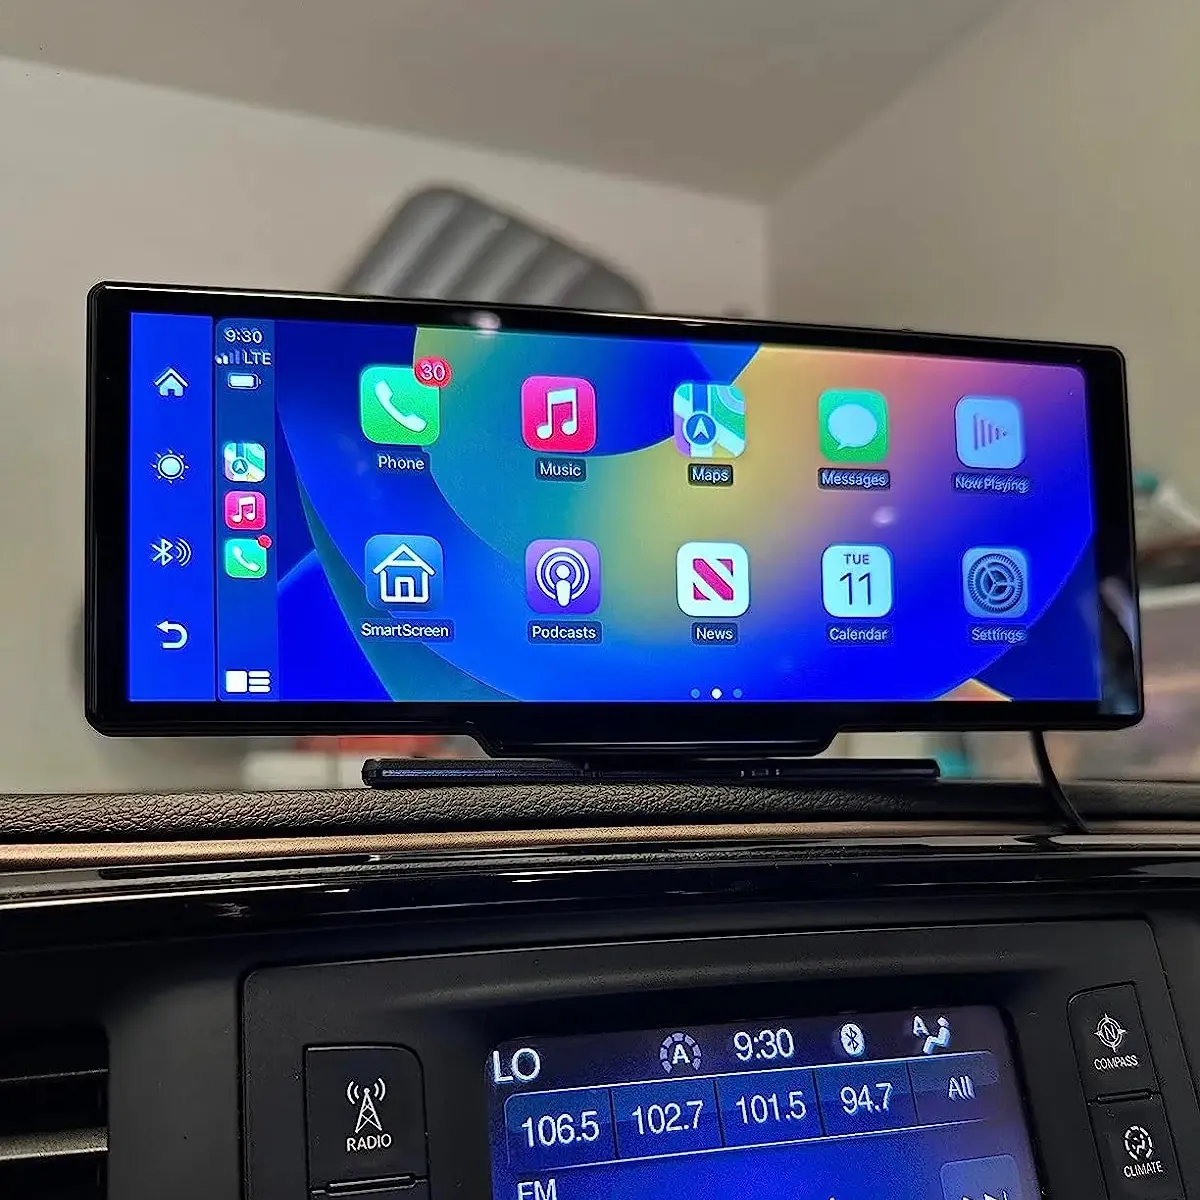 Joyeauto 10 pouces écran tactile Carplay lecteur MP5 voiture jouer miroir lien FM TF Carplay Android auto